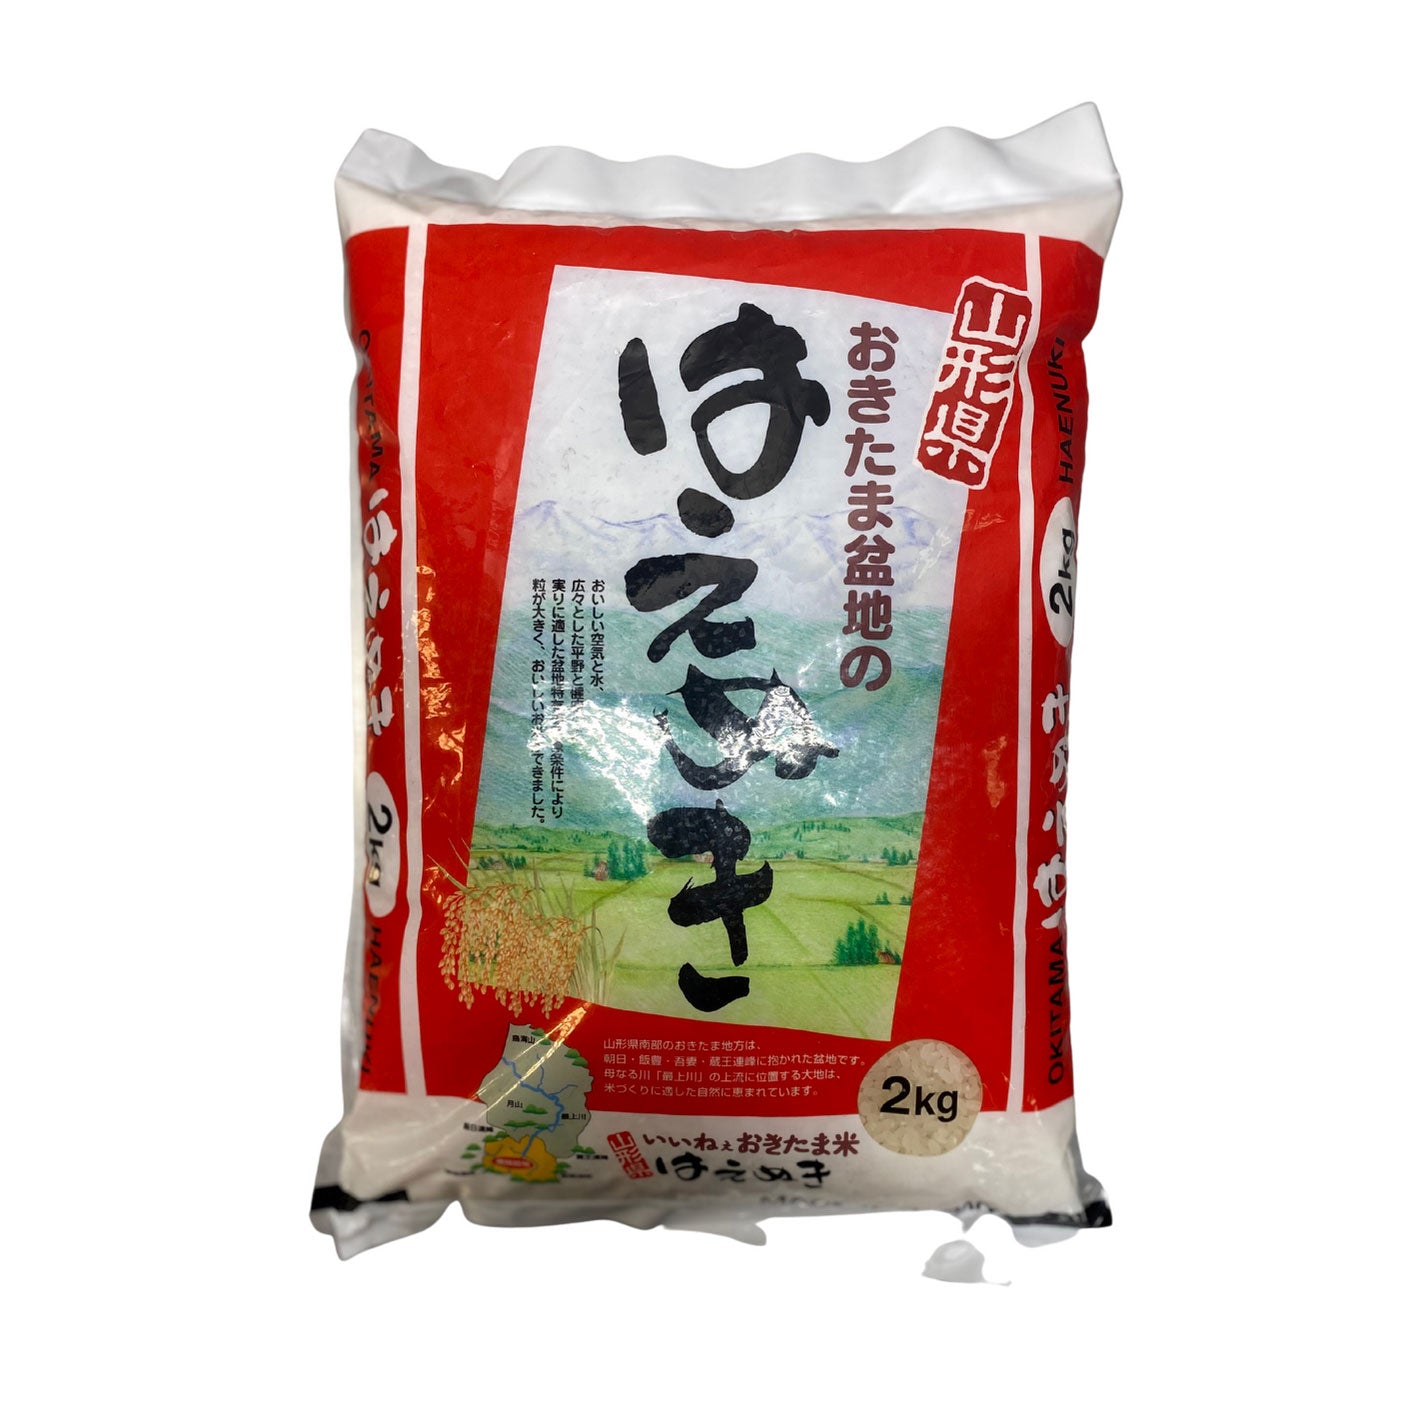 Rice Japanese Sushi Haenuki Yamagataken 2kg